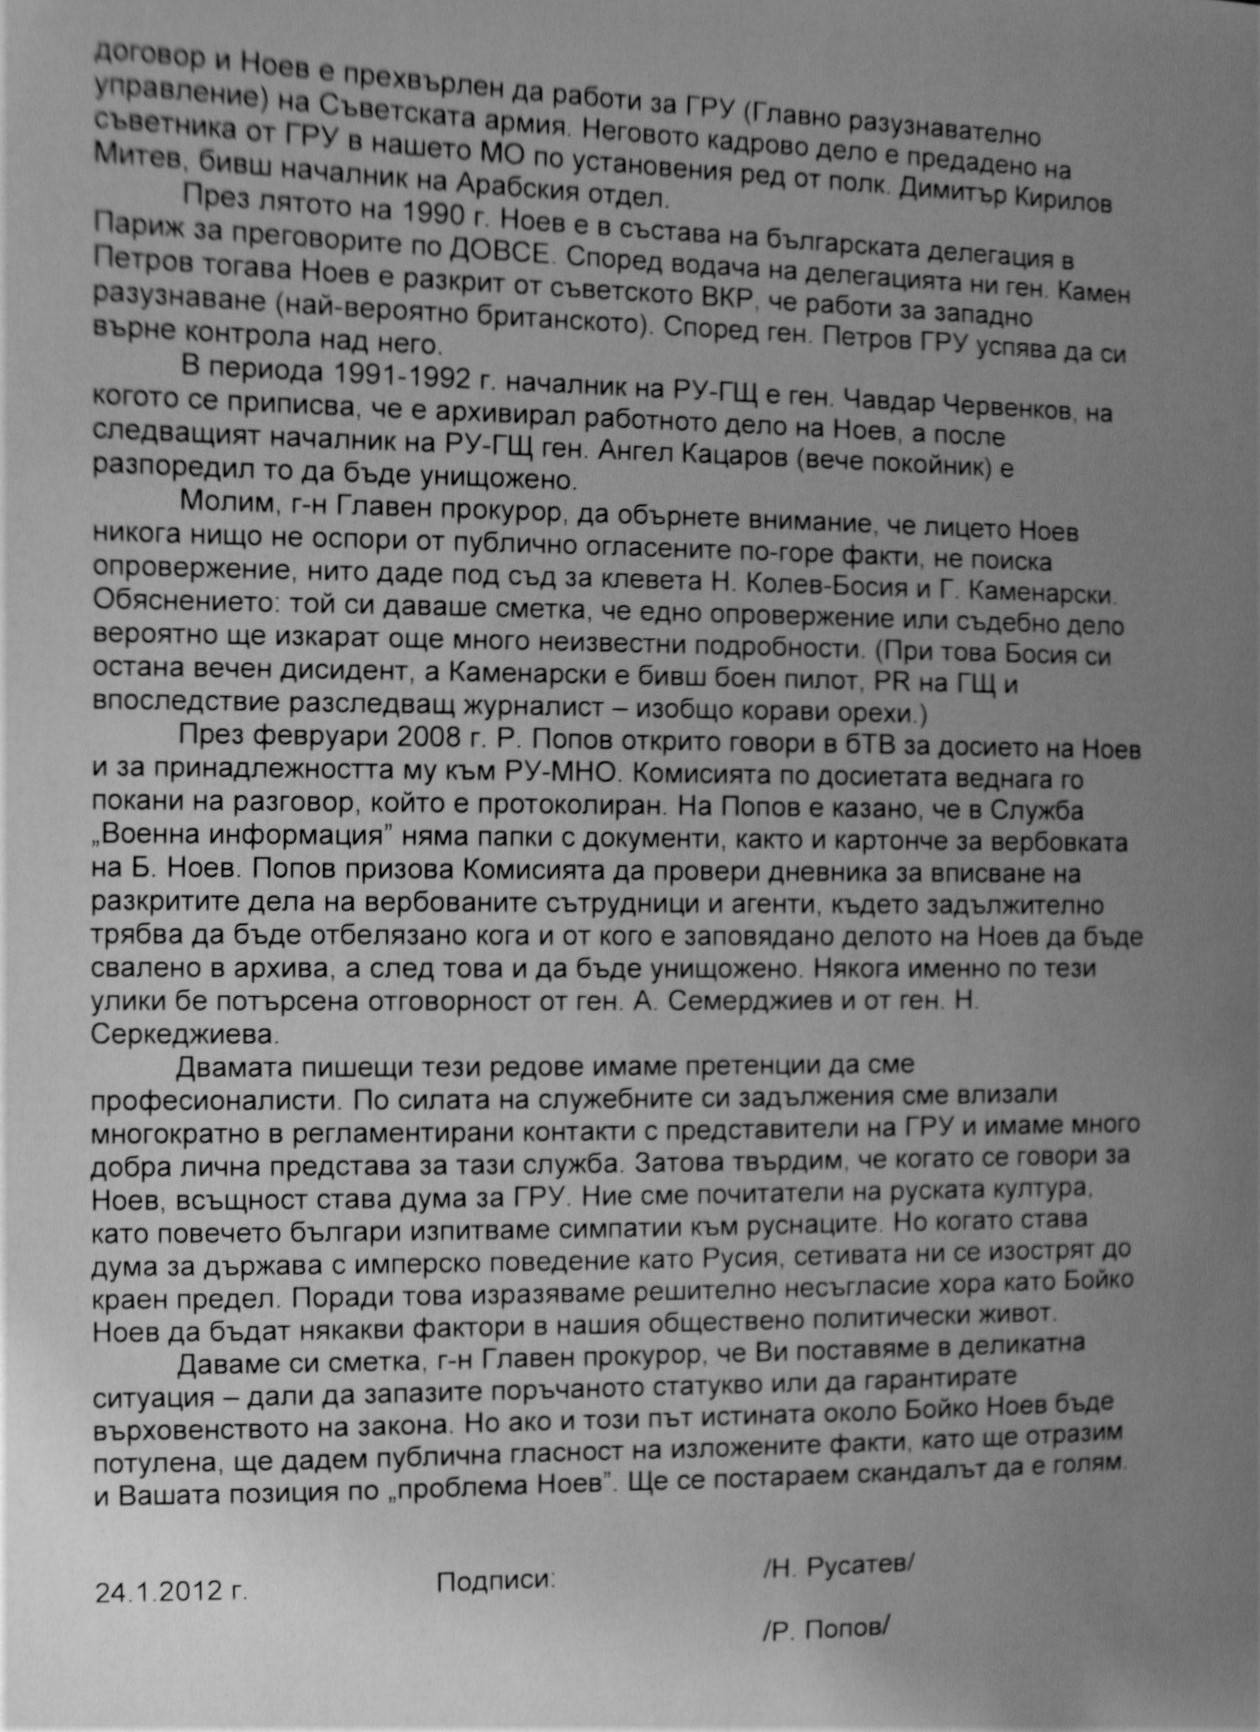 Писмото на бившия зам.директор по агентурата на военното разузнаване Николай Русатев и Радион Попов до Борис Велчев`